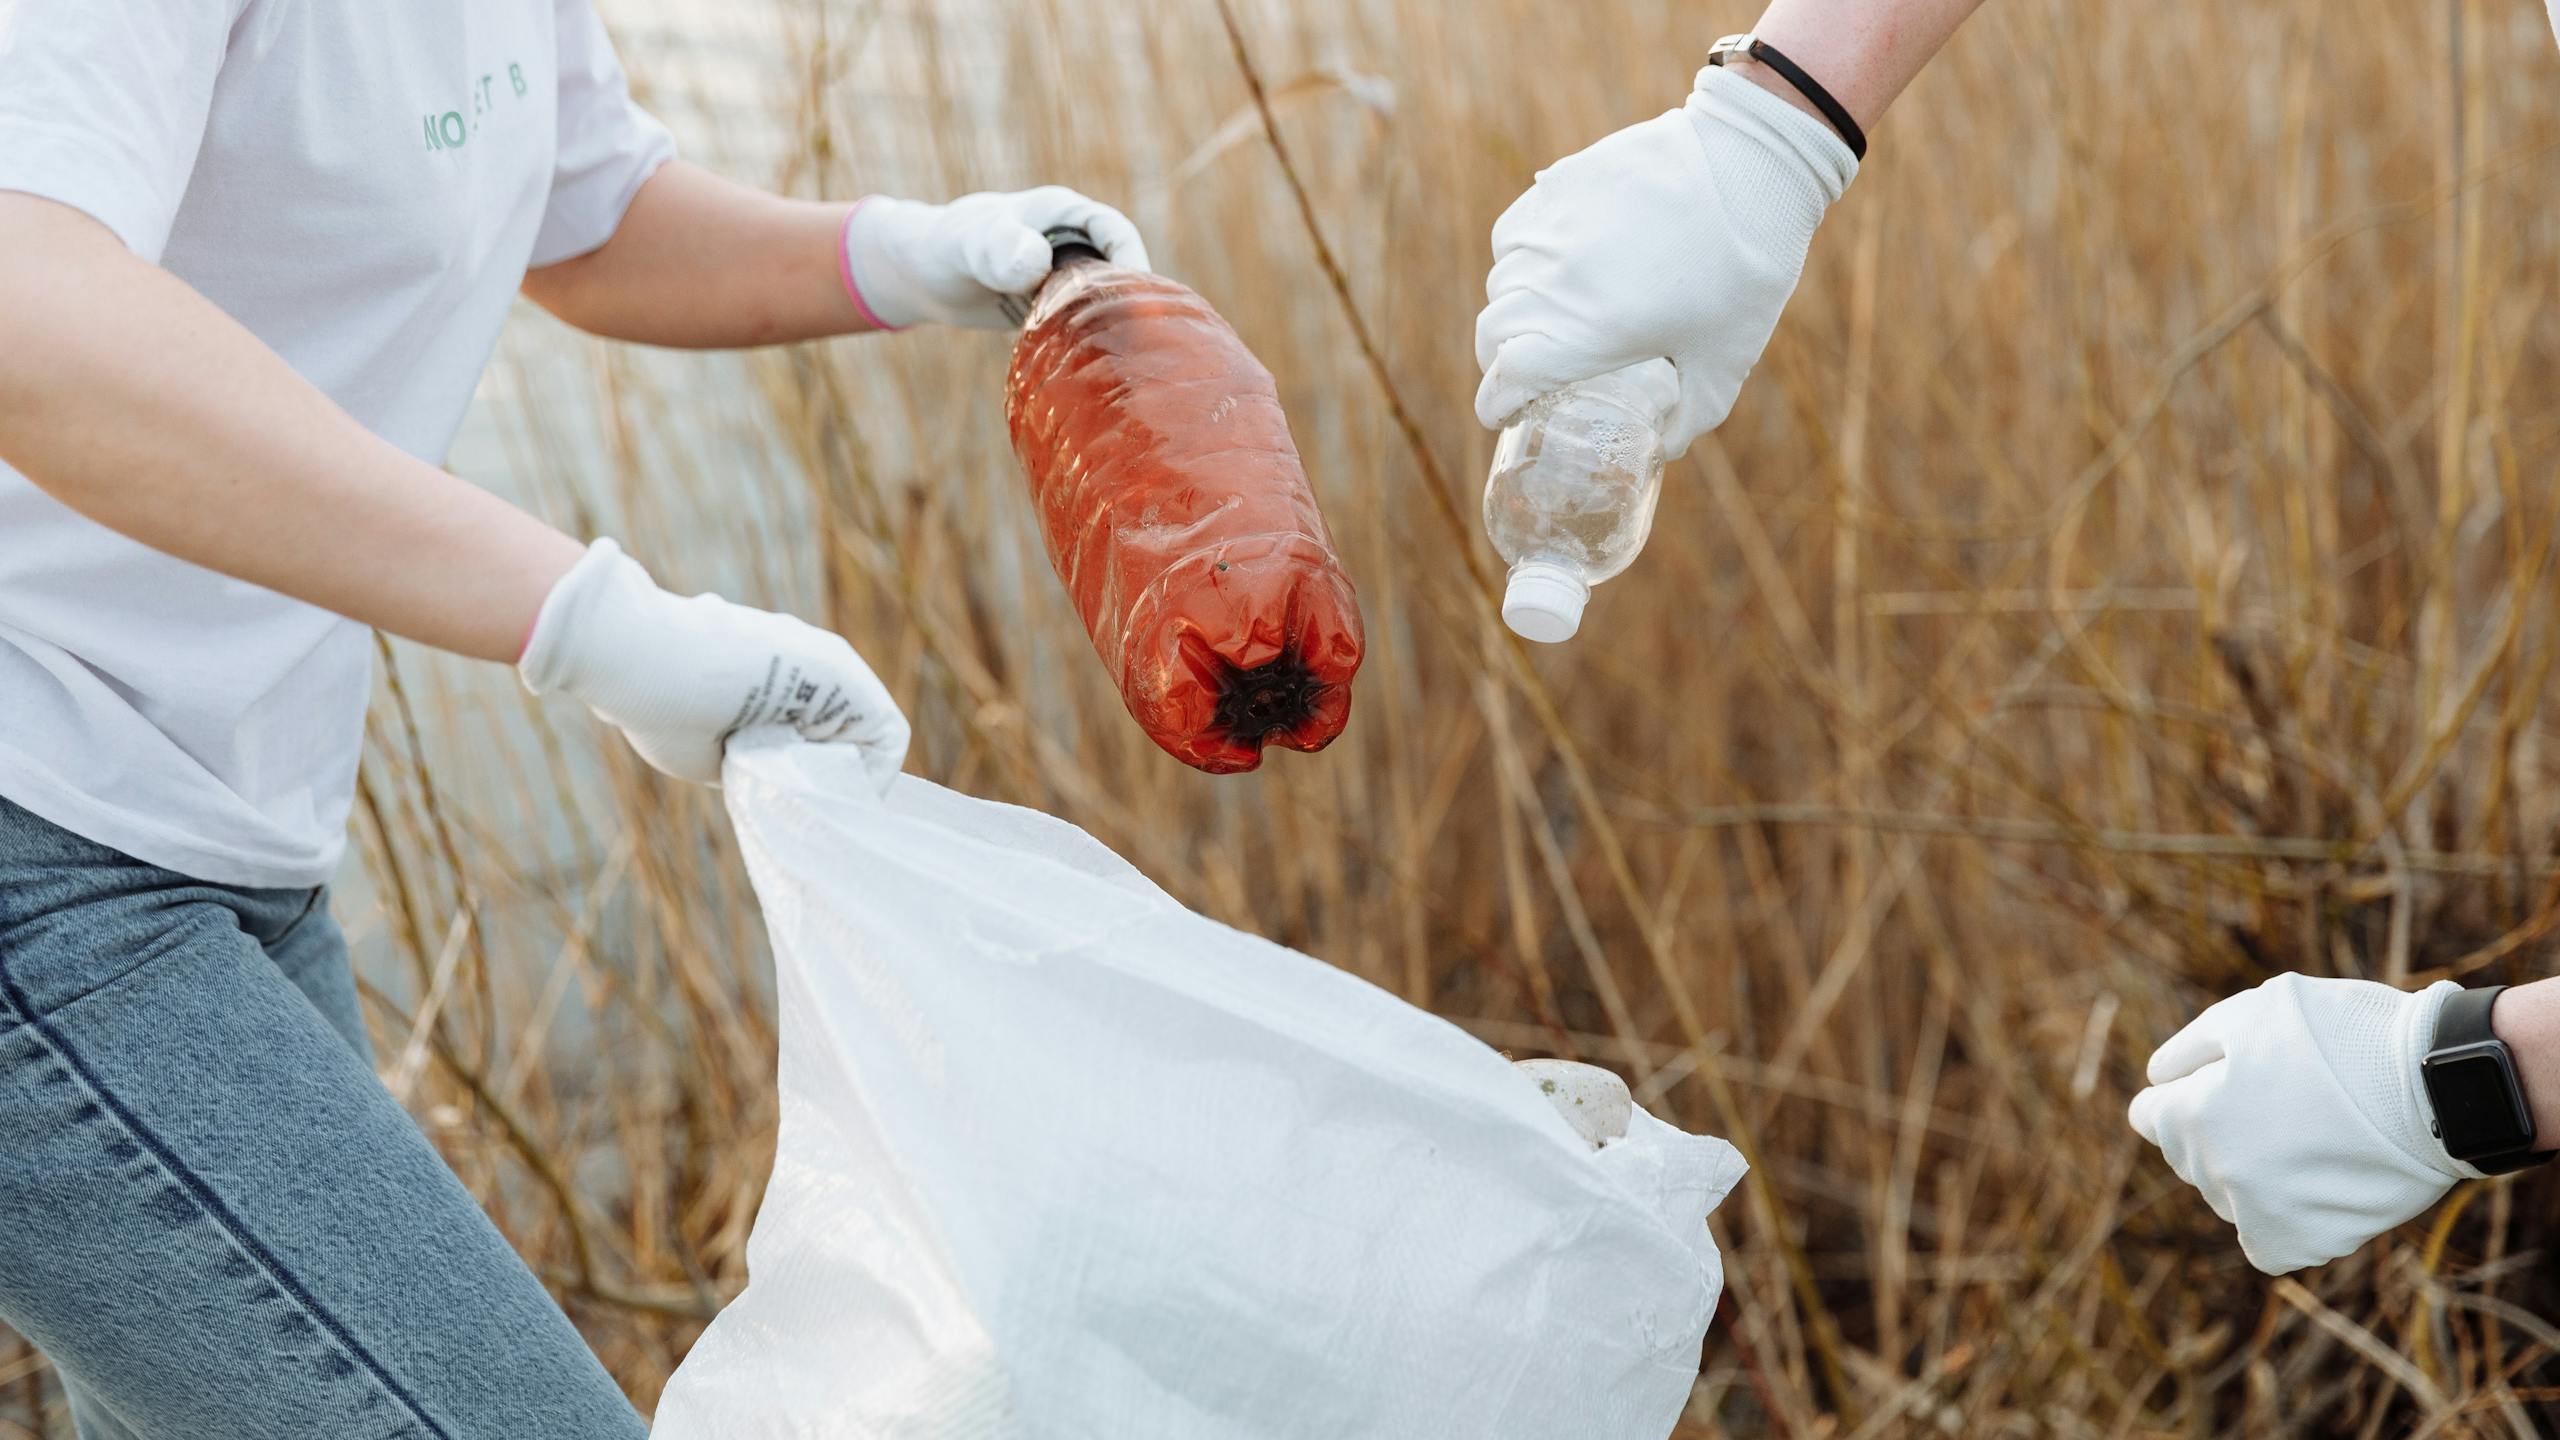 Plastique : ce qui change aujourd'hui et demain - Deux personnes ramassant des bouteilles en plastique dans un champs